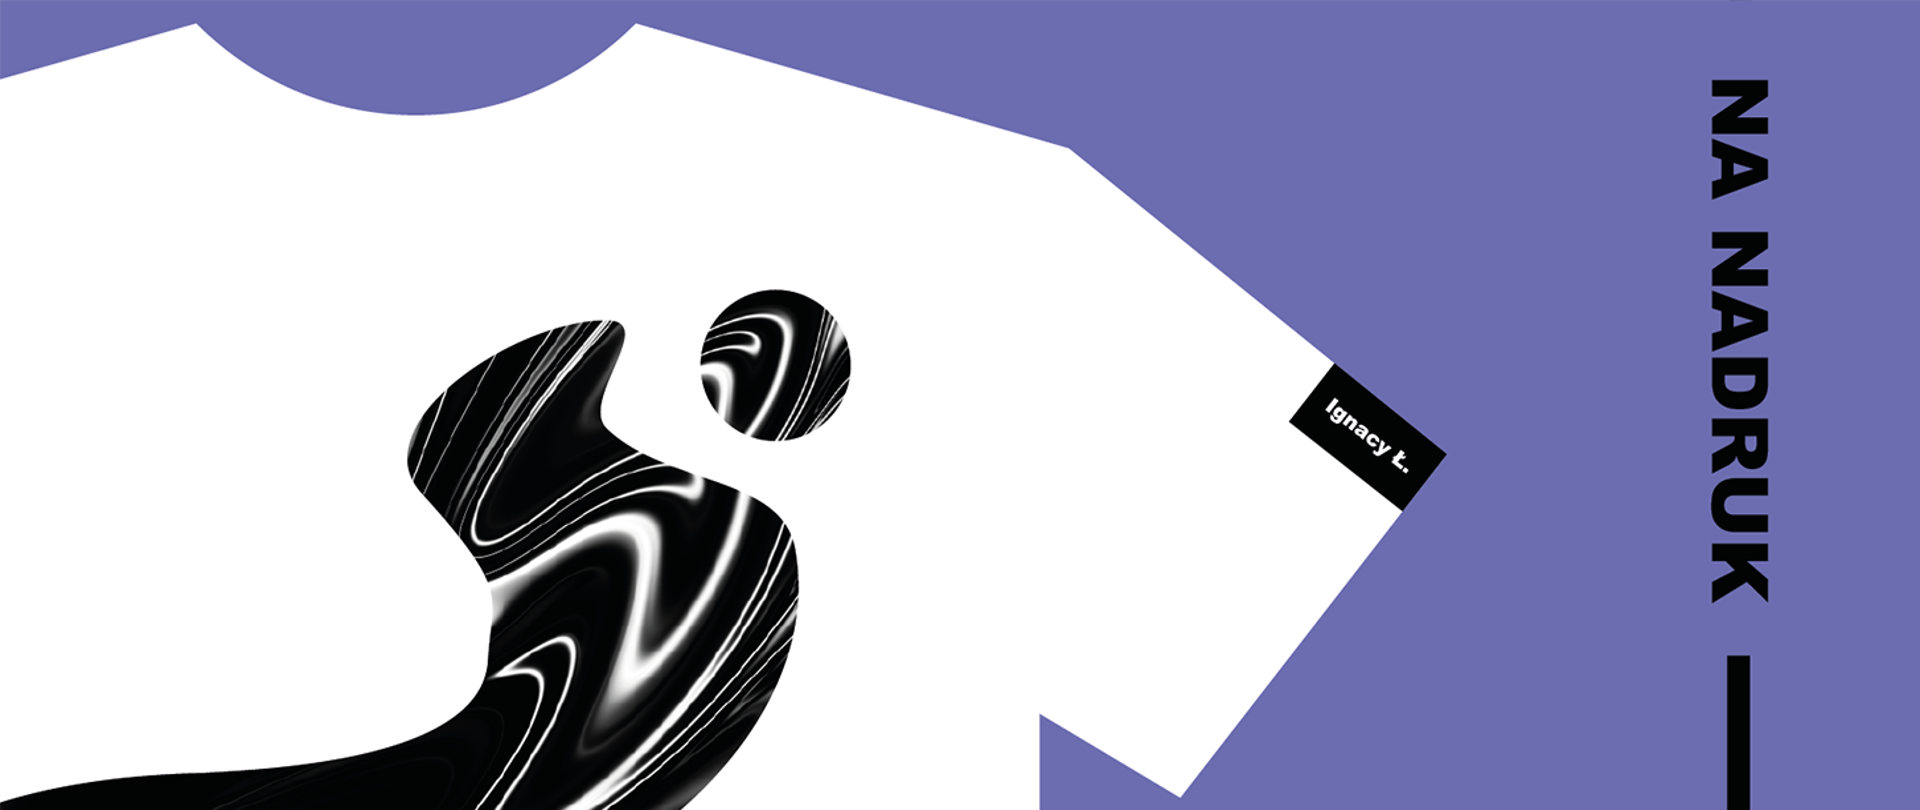 Grafika przedstawia po lewej prawy górny fragment białej koszulki T-shirt na szaroniebieskim tle, na koszulce na wysokości piersi czarne plamy ze świetlistymi smugami symbolizujące ropę naftową, na rękawie czarna metka z napisem Ignacy Ł., po prawej w pozycji pionowej od góry czarny napis Na nadruk, pod napisem, na jego przedłużeniu, czarna pionowa kreska biegnąca do dolnej krawędzi grafiki. 